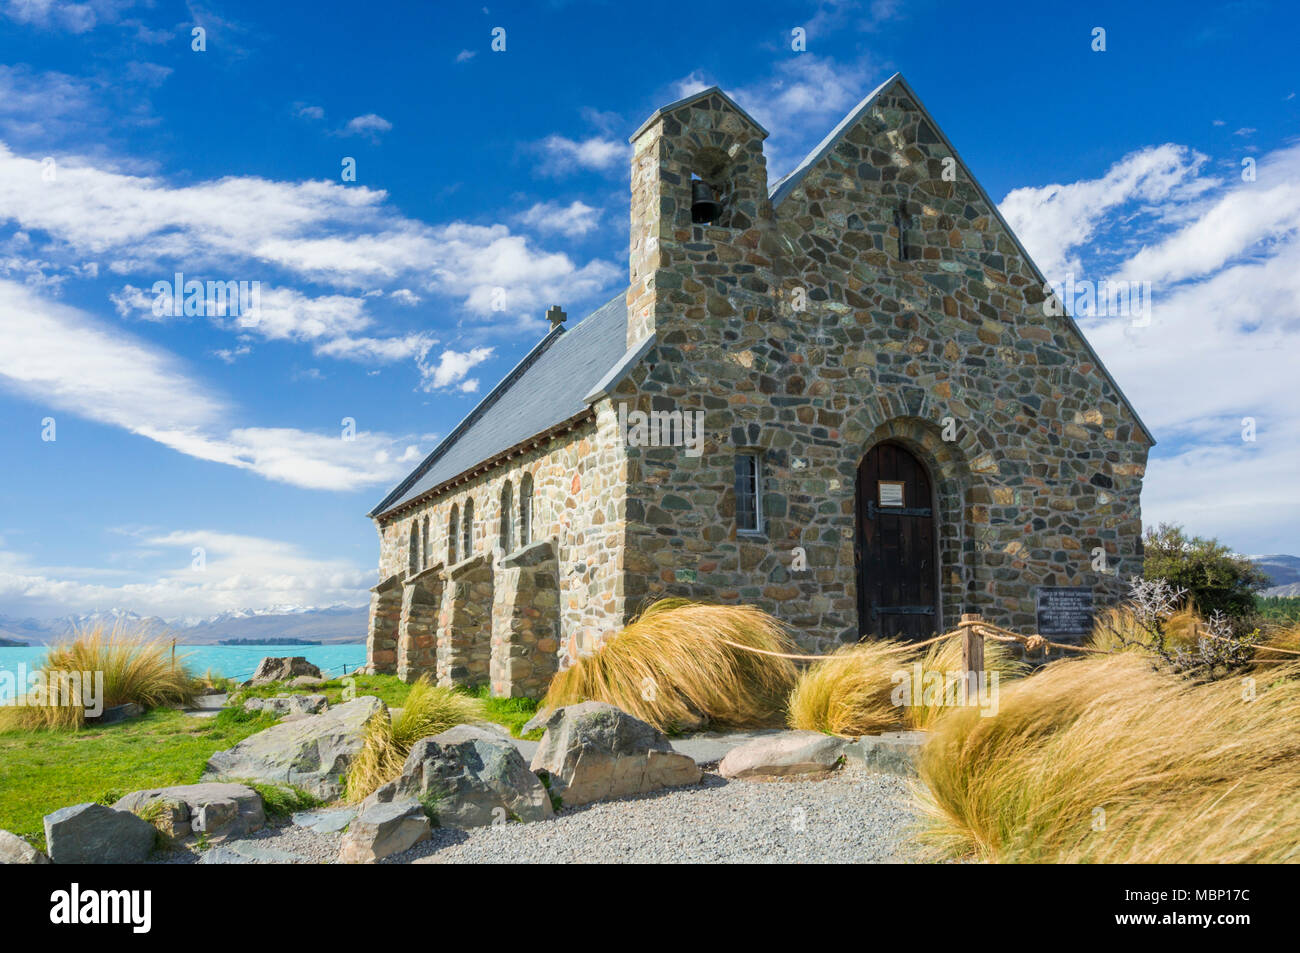 Kirche des Guten Hirten Lake Tekapo Neuseeland mackenzie Bezirk South Island nz TEKAPO Lake Tekapo Neuseeland Südinsel Neuseeland Stockfoto